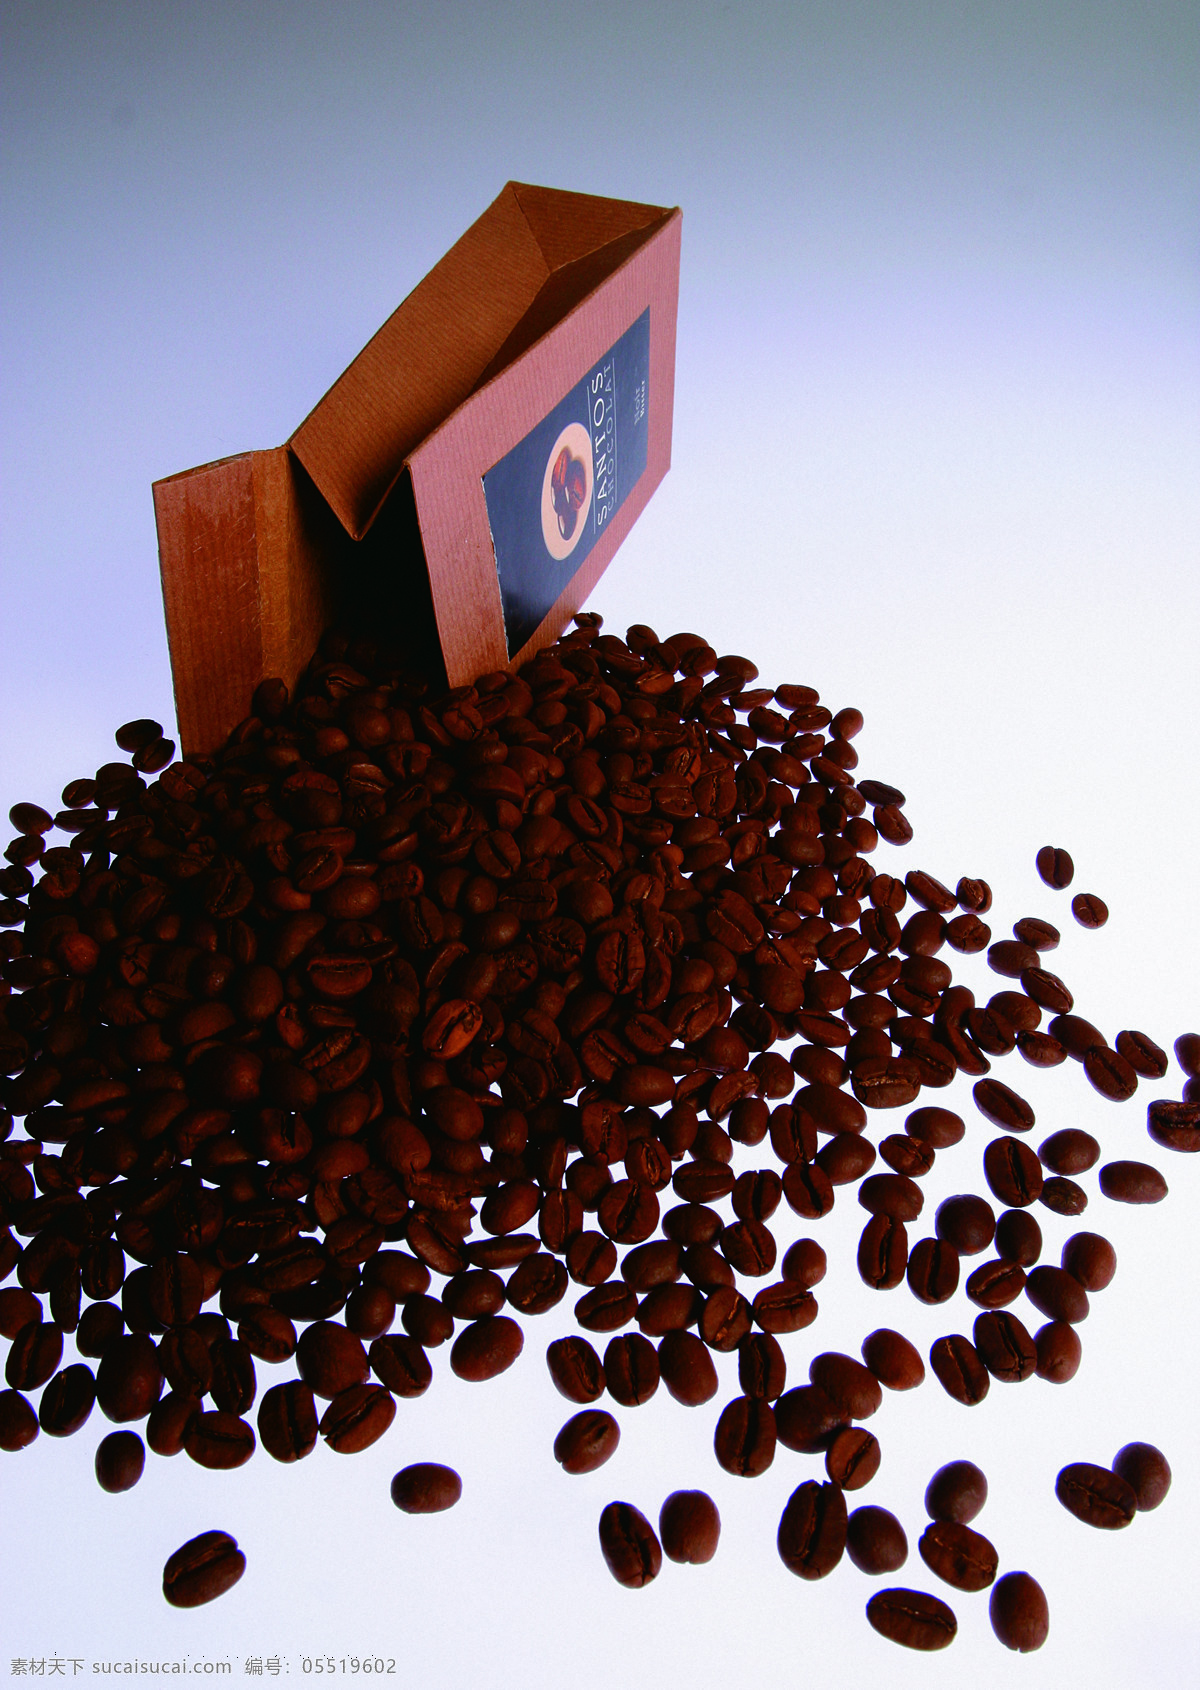 袋 散落 咖啡豆 咖啡 纸袋 包装 倒出 黑咖啡 商品 美味 果实饱满 咖啡文化 品味 生活 高清图片 咖啡图片 餐饮美食